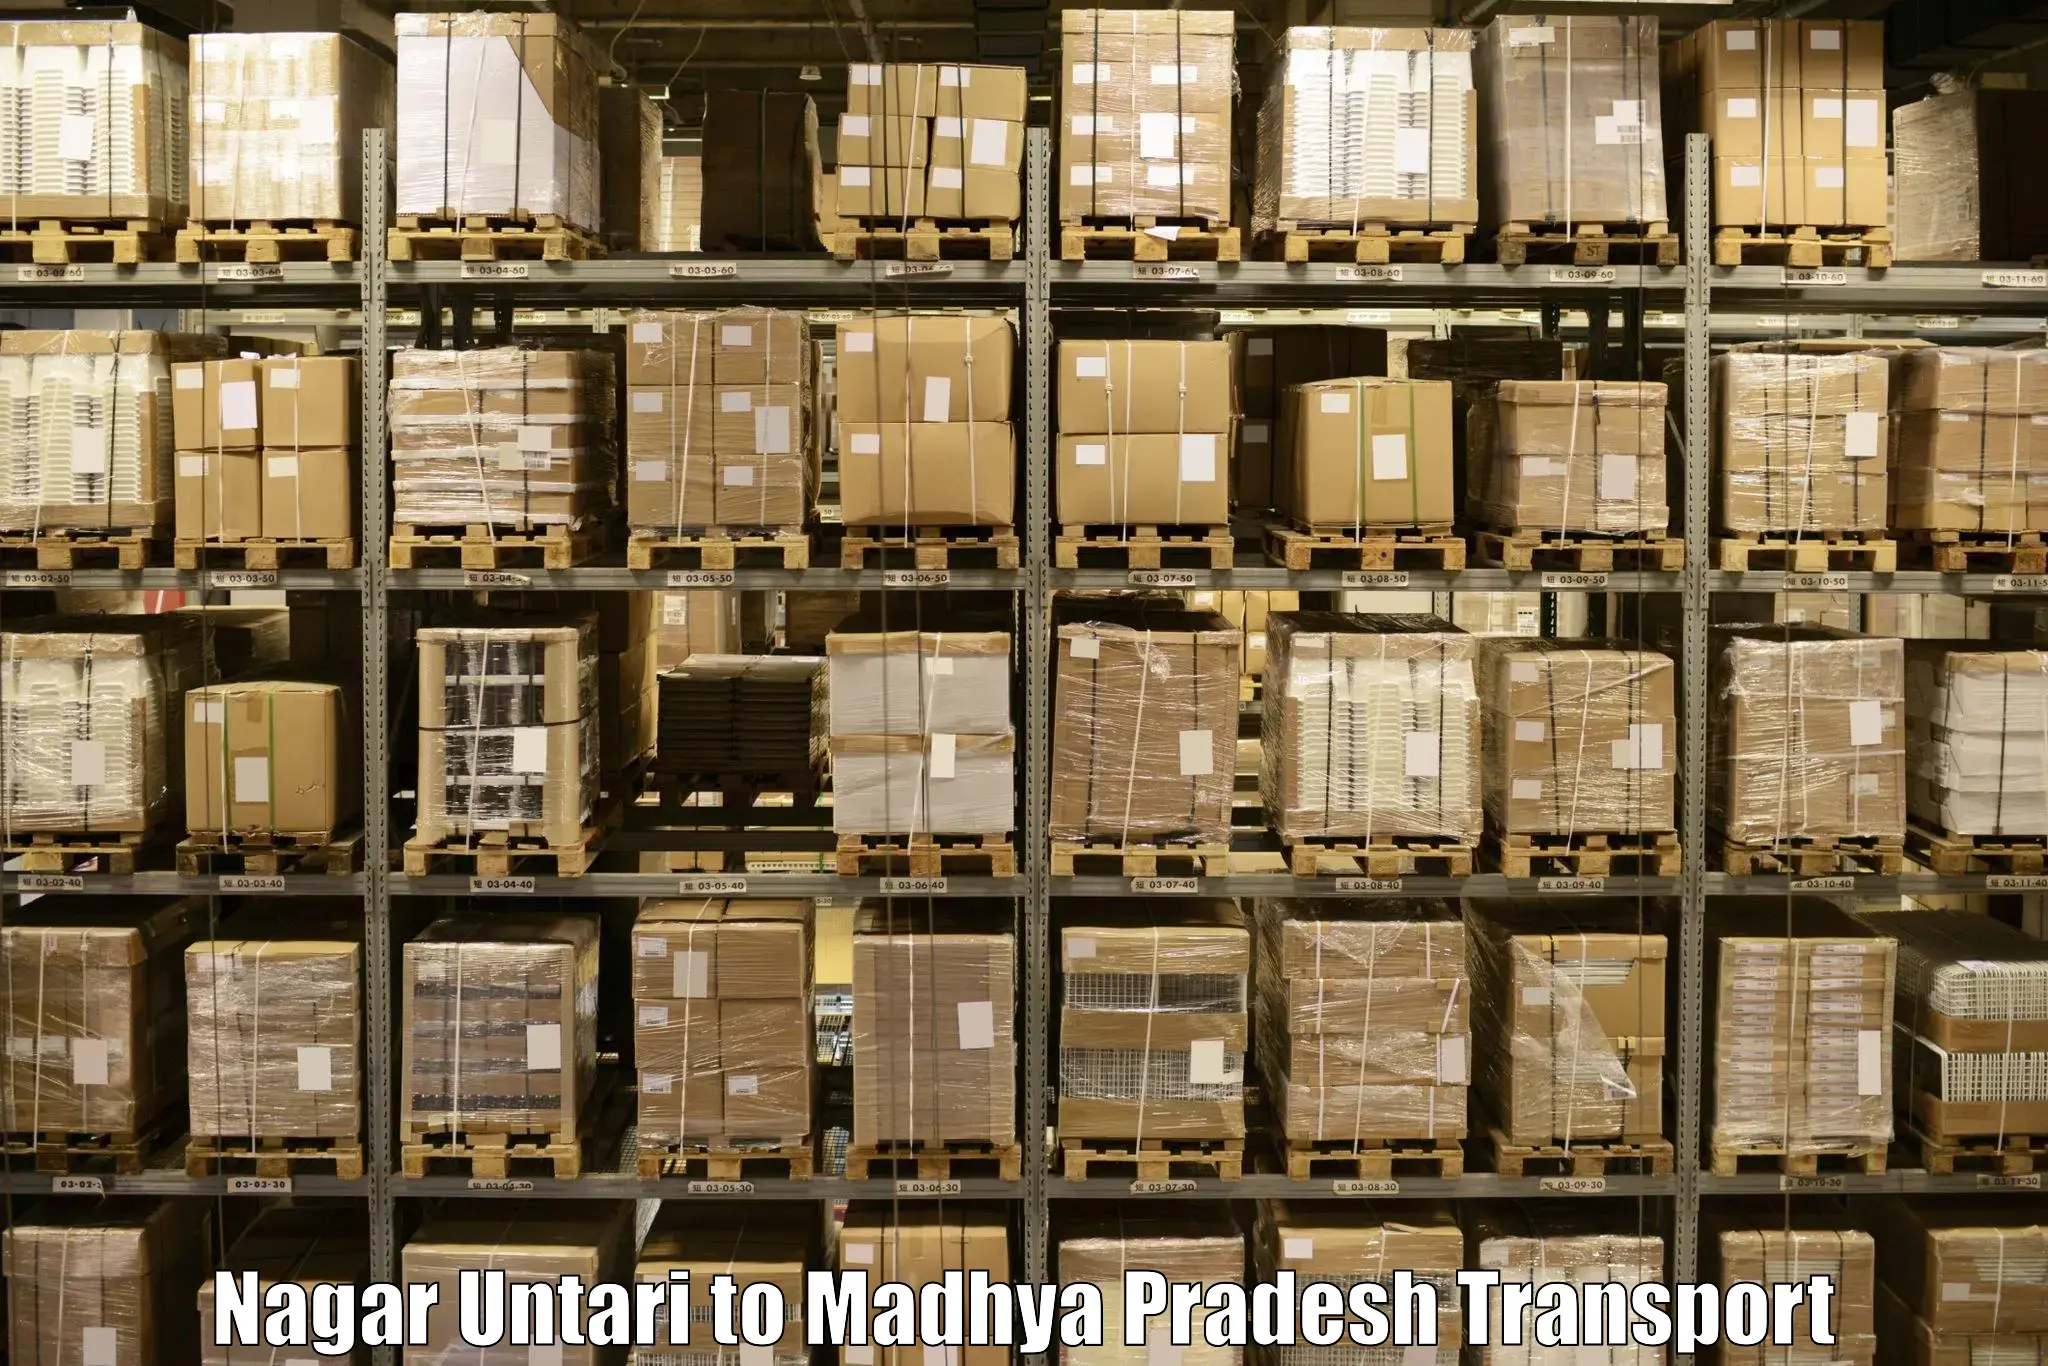 Cargo train transport services Nagar Untari to Multai